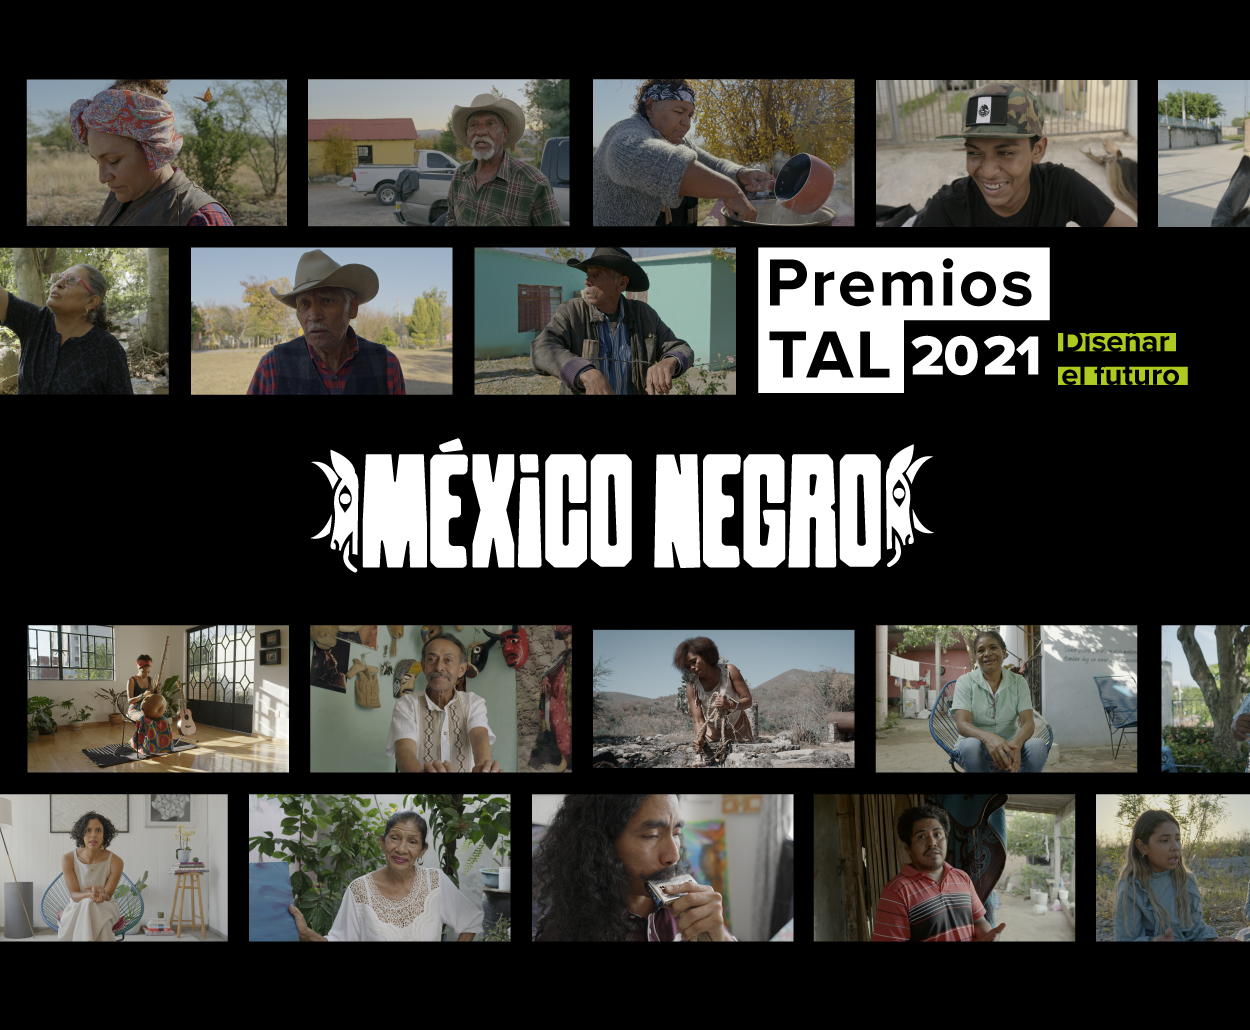 La serie “México Negro”, del Canal Catorce, del SPR fue galardonada por mejor serie documental en la categoría “Identidades Colectivas” de los “Premios Tal 2021- Diseñar el futuro”